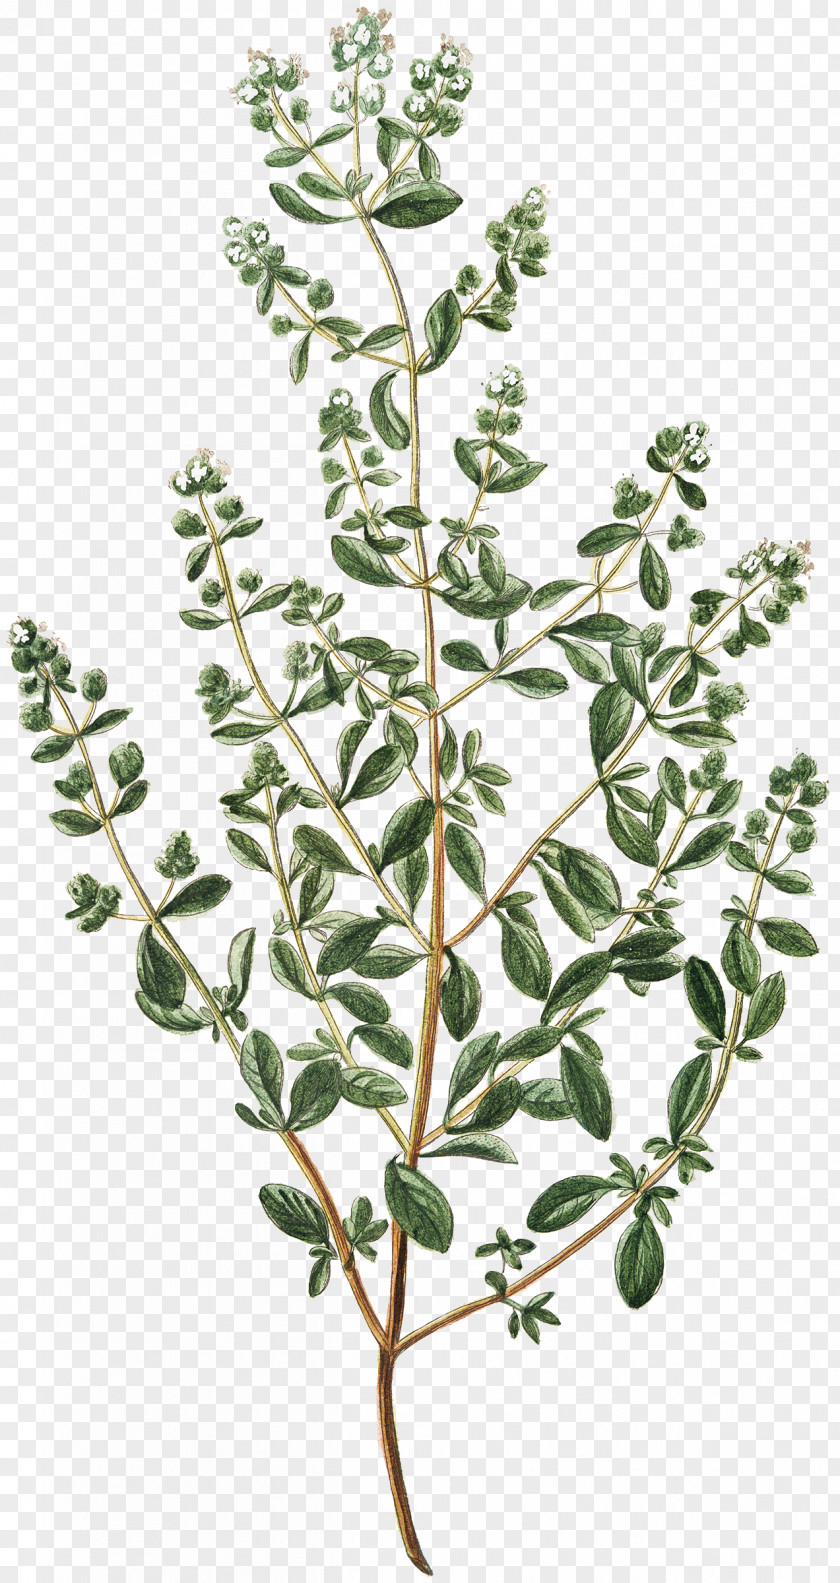 Fresh Basil Herb Origanum Dictamnus A Taxonomic Revision Of The Genus (Labiatae) Condiment Illustration PNG